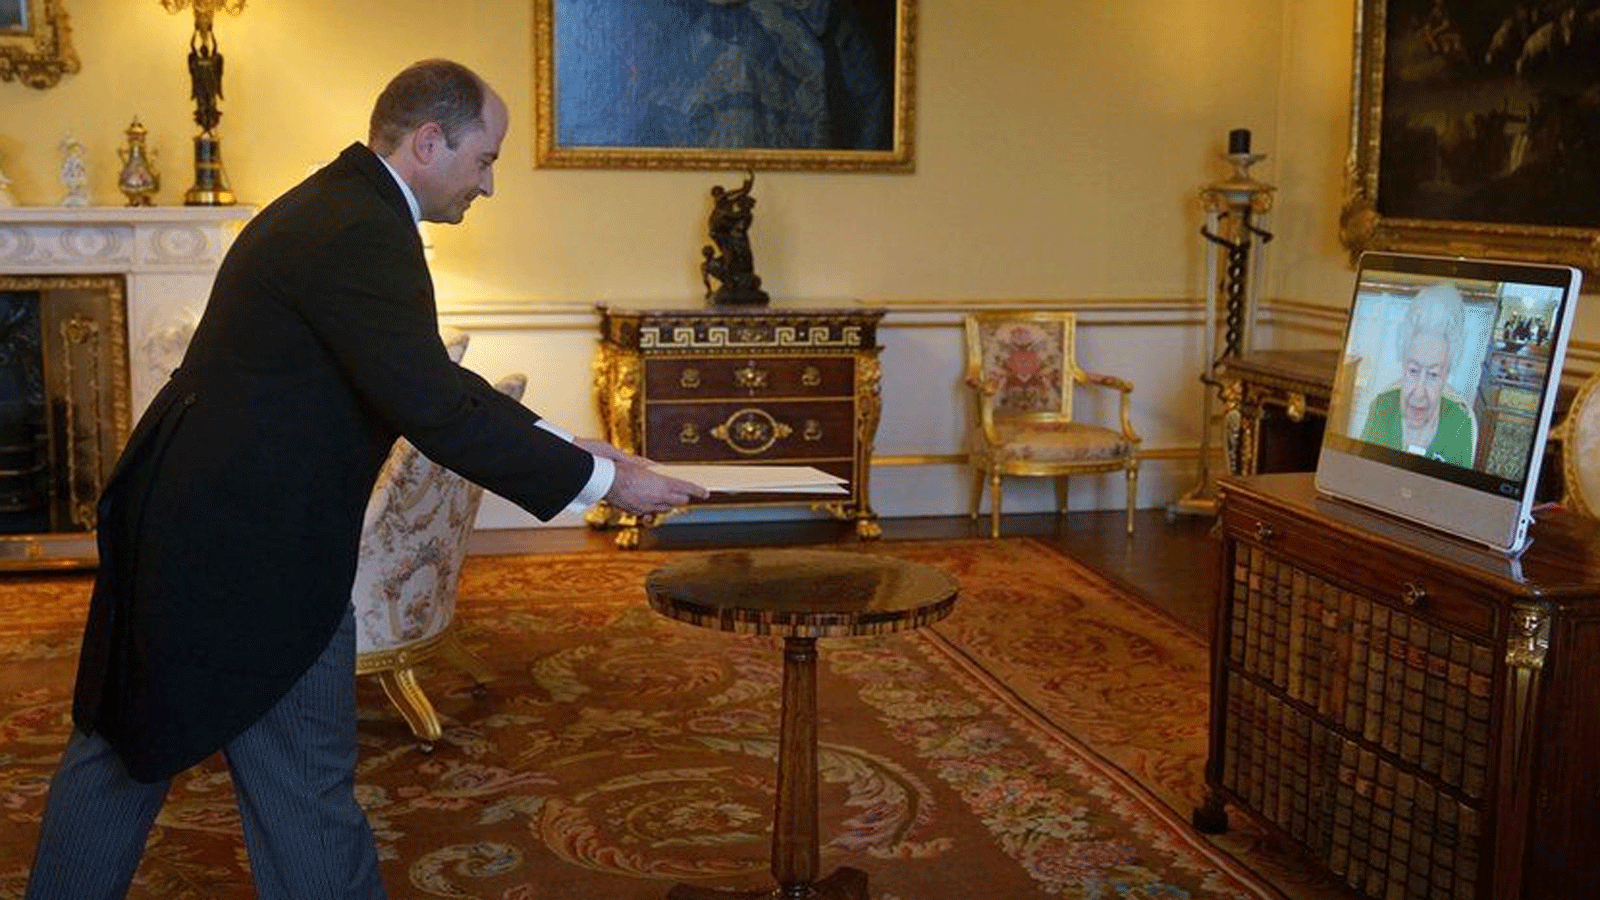 سفير إمارة أندورا يقدم أوراق اعتماده افتراضيا للملكة(صورة من قصر باكنغهام)